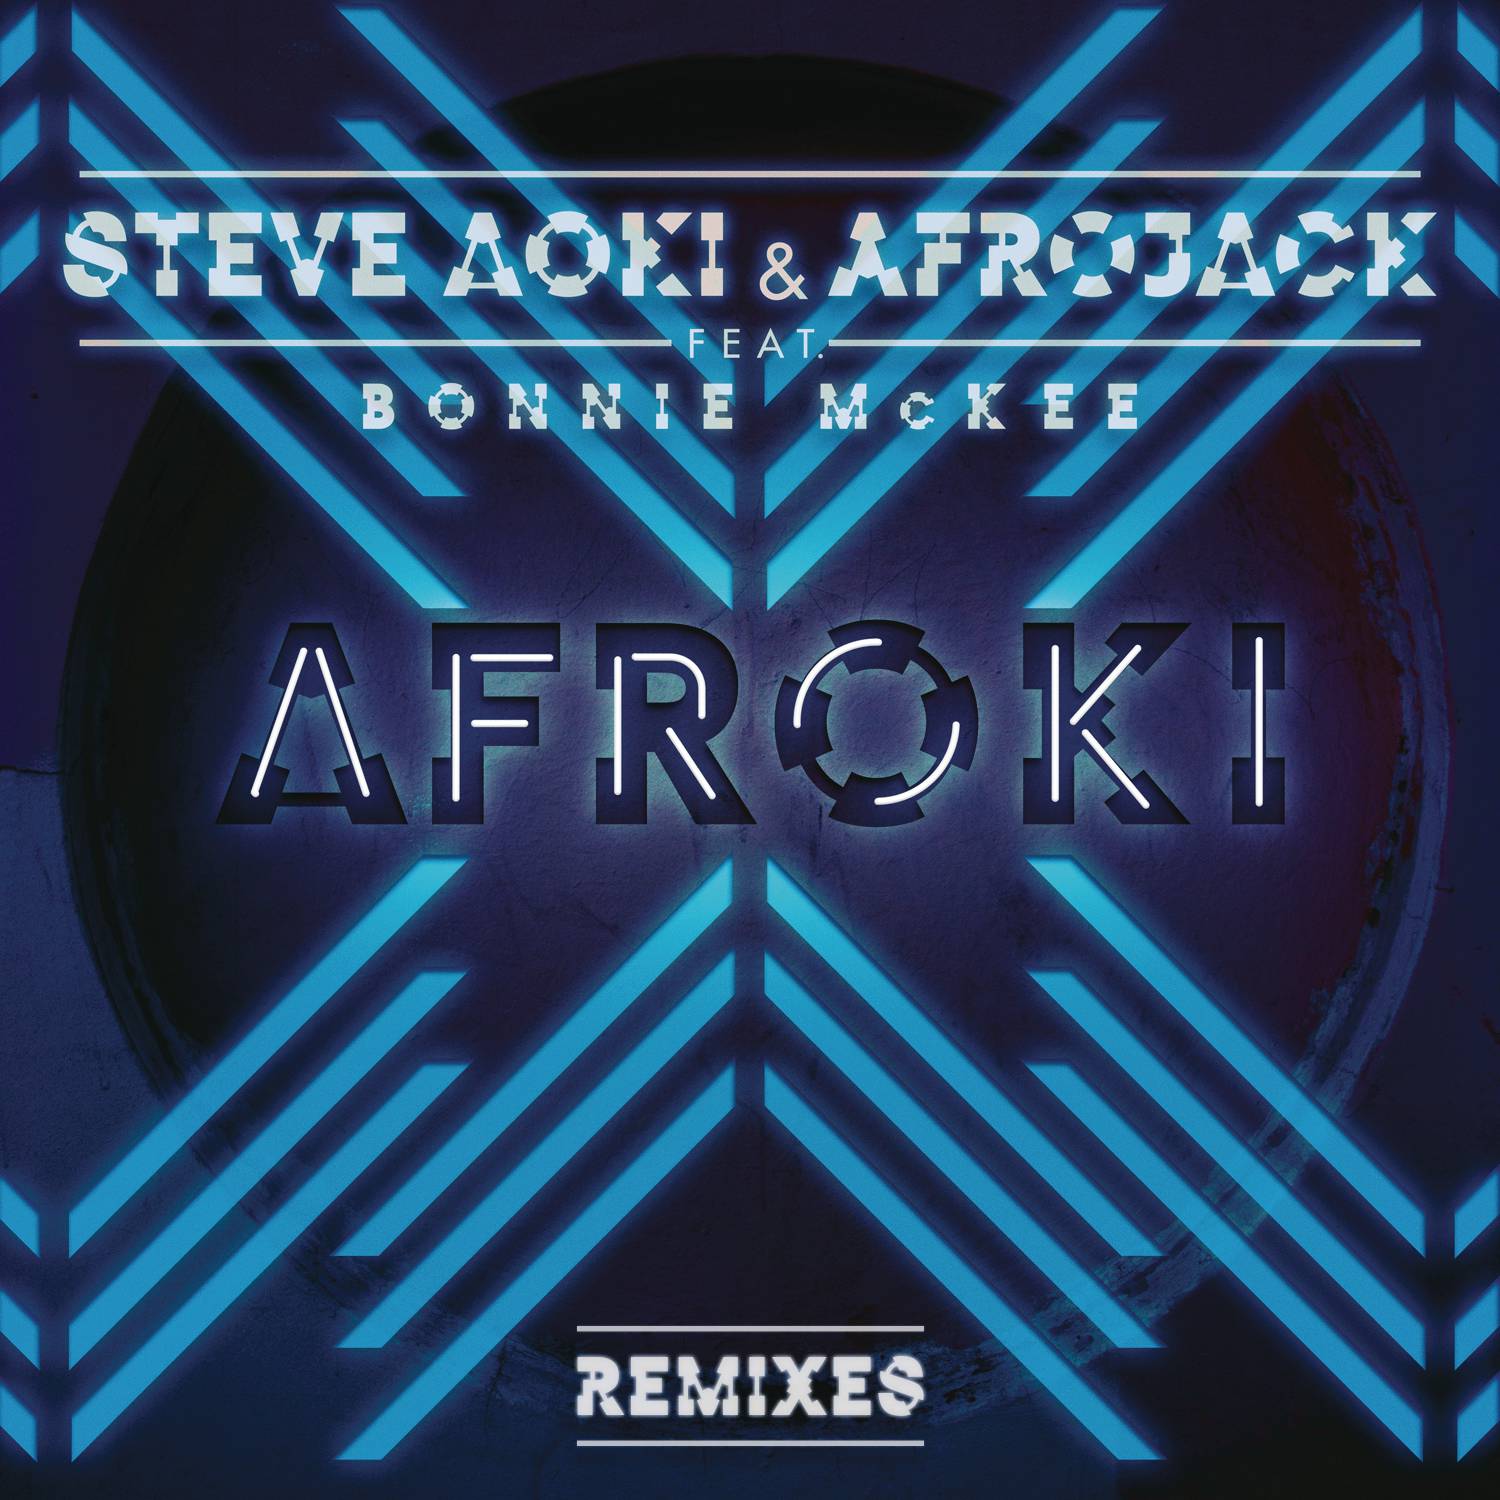 Afroki (Remixes)